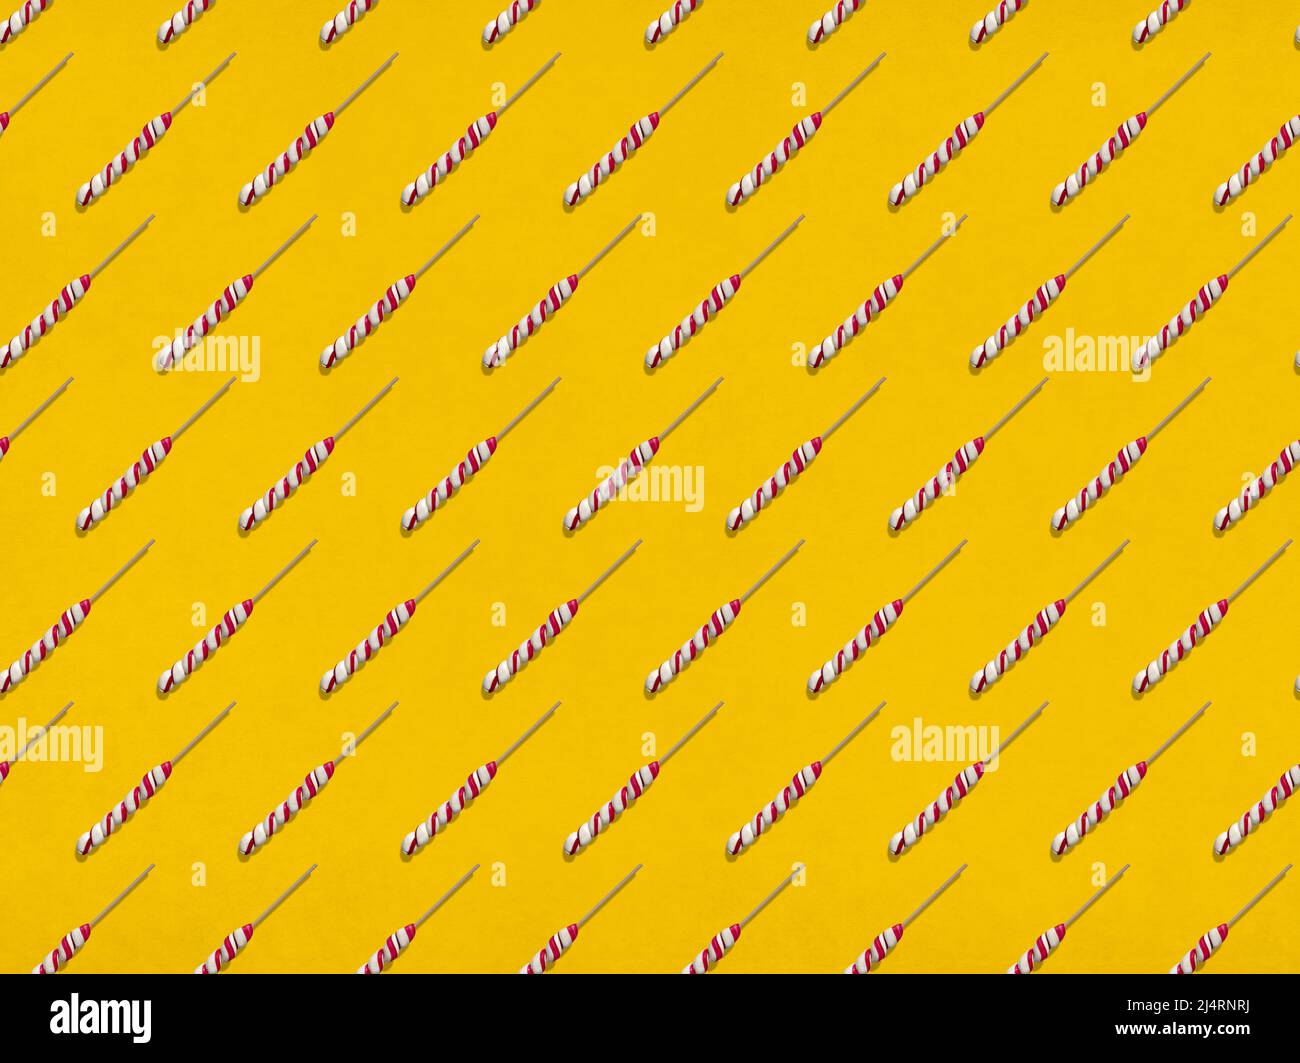 Viele süße Lutscher, die in Reihen auf gelbem Hintergrund angeordnet sind Stockfoto